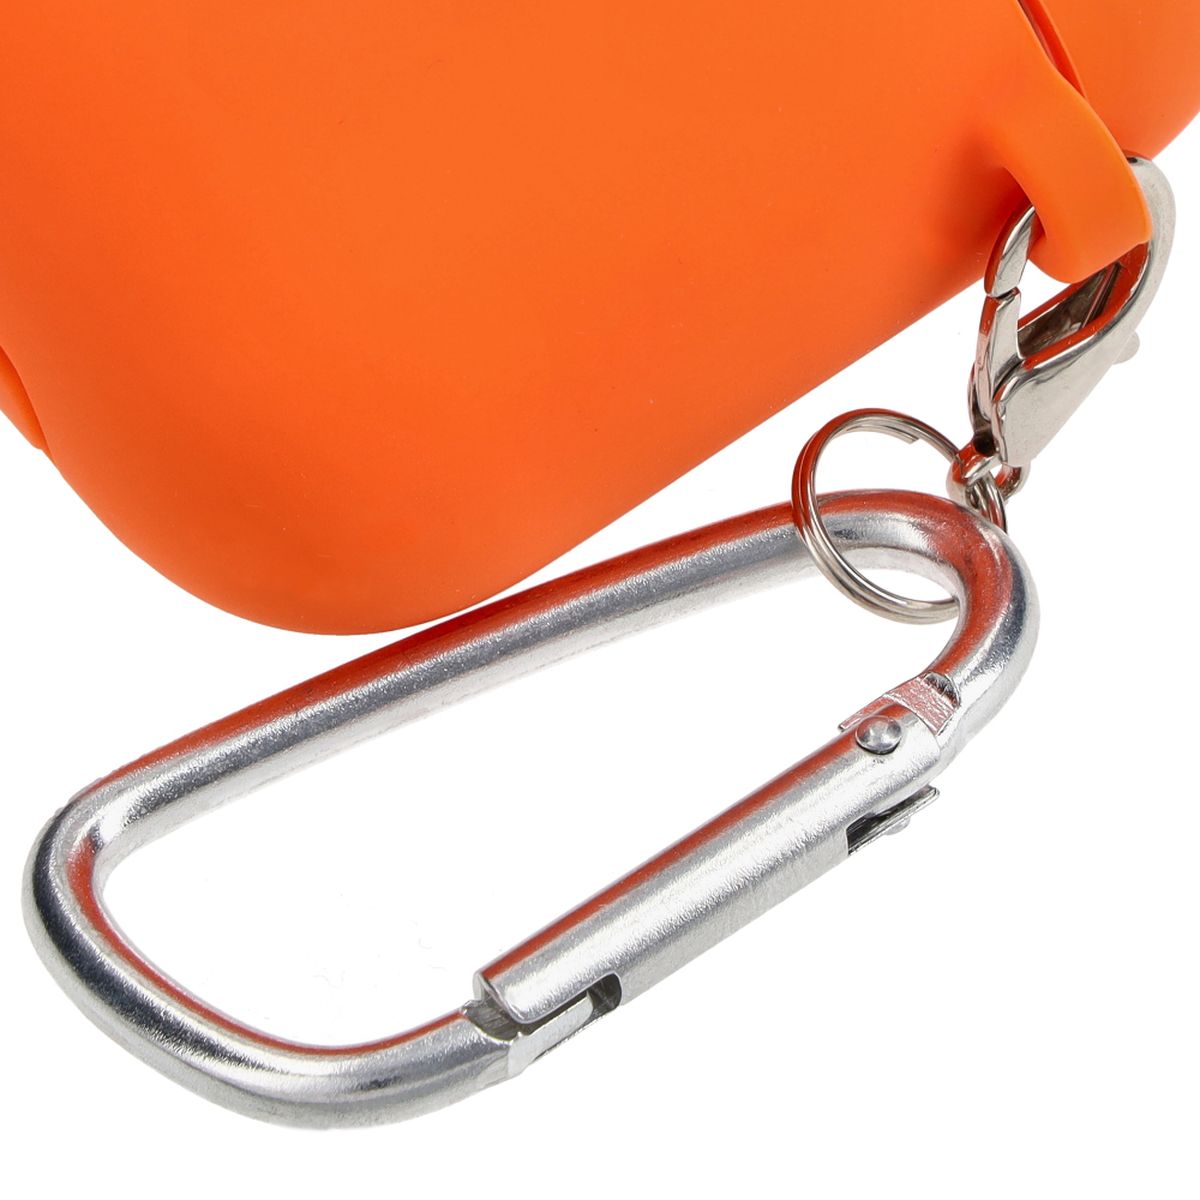 Schutzhülle für AirPods 1/2, Bizon Case Headphone Silicone, Karottenfarbe